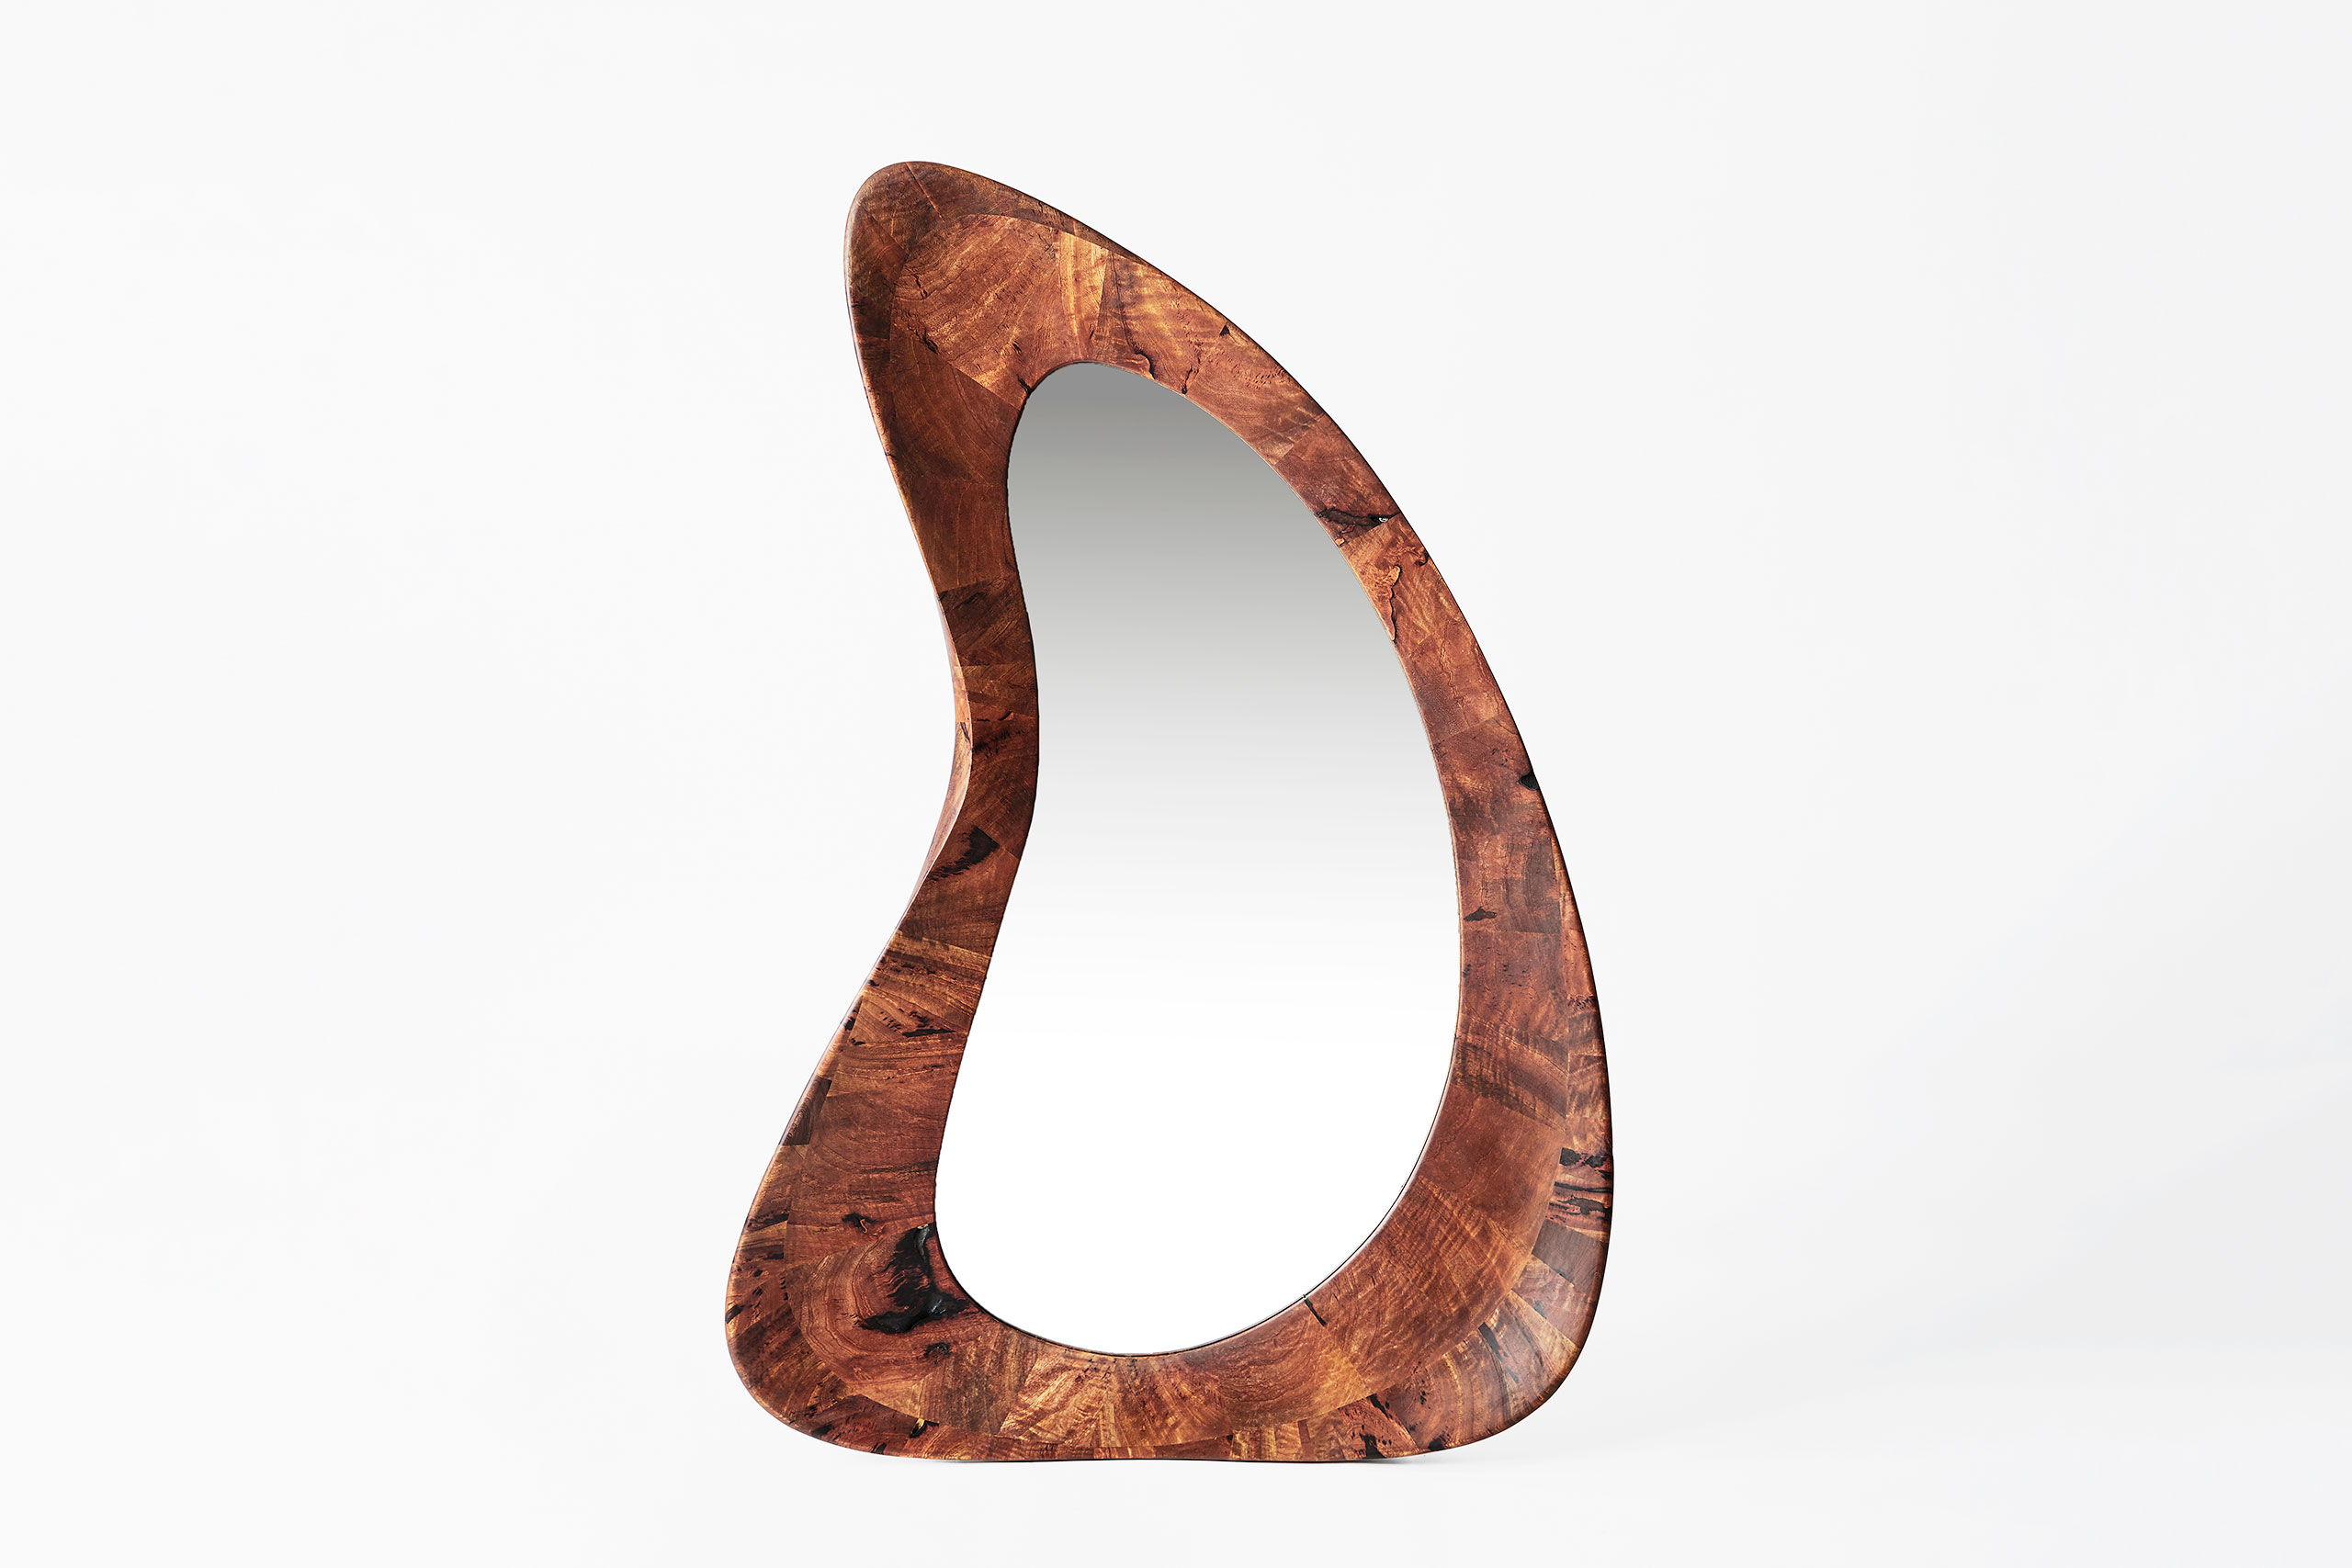 Art - contemporain - galerie d'art - bois - manguier - courbé - sculpture - miroir - Maxime Goléo - design intérieur - sensuel - épuré